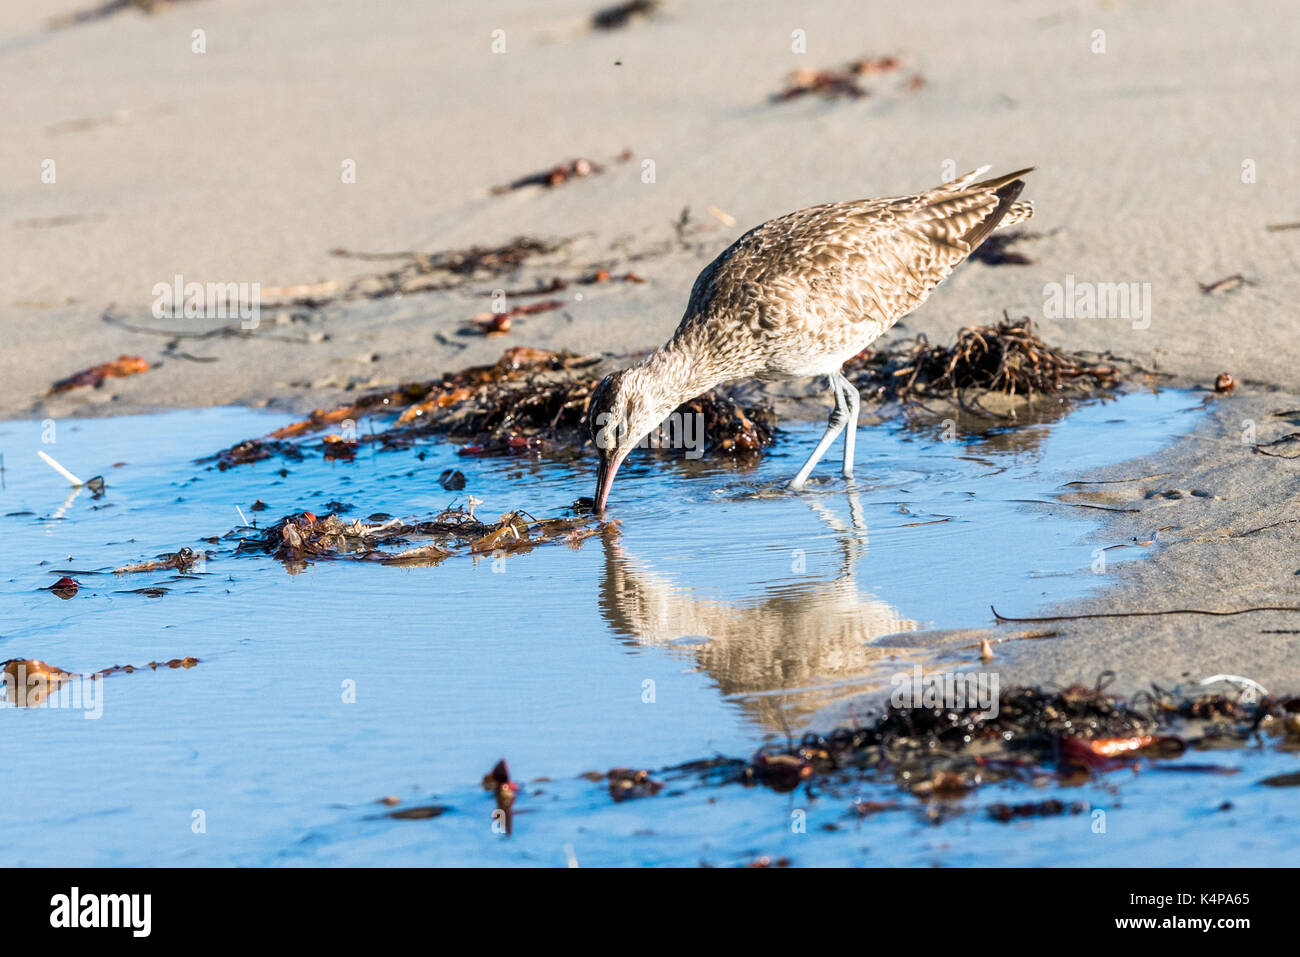 La reflexión del zarapito trinador, shore bird Foto de stock